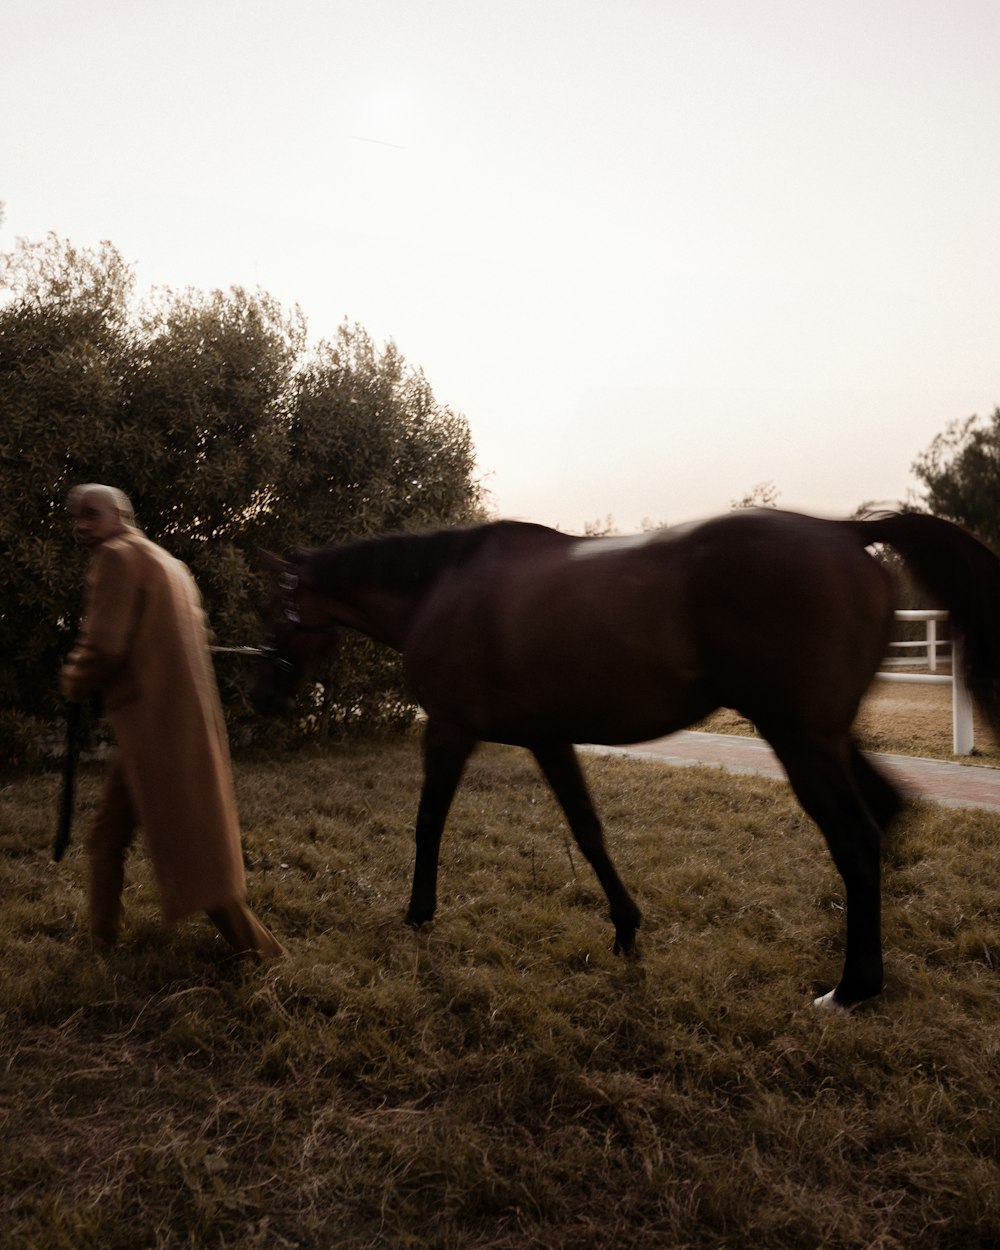 a man walking a horse in a field